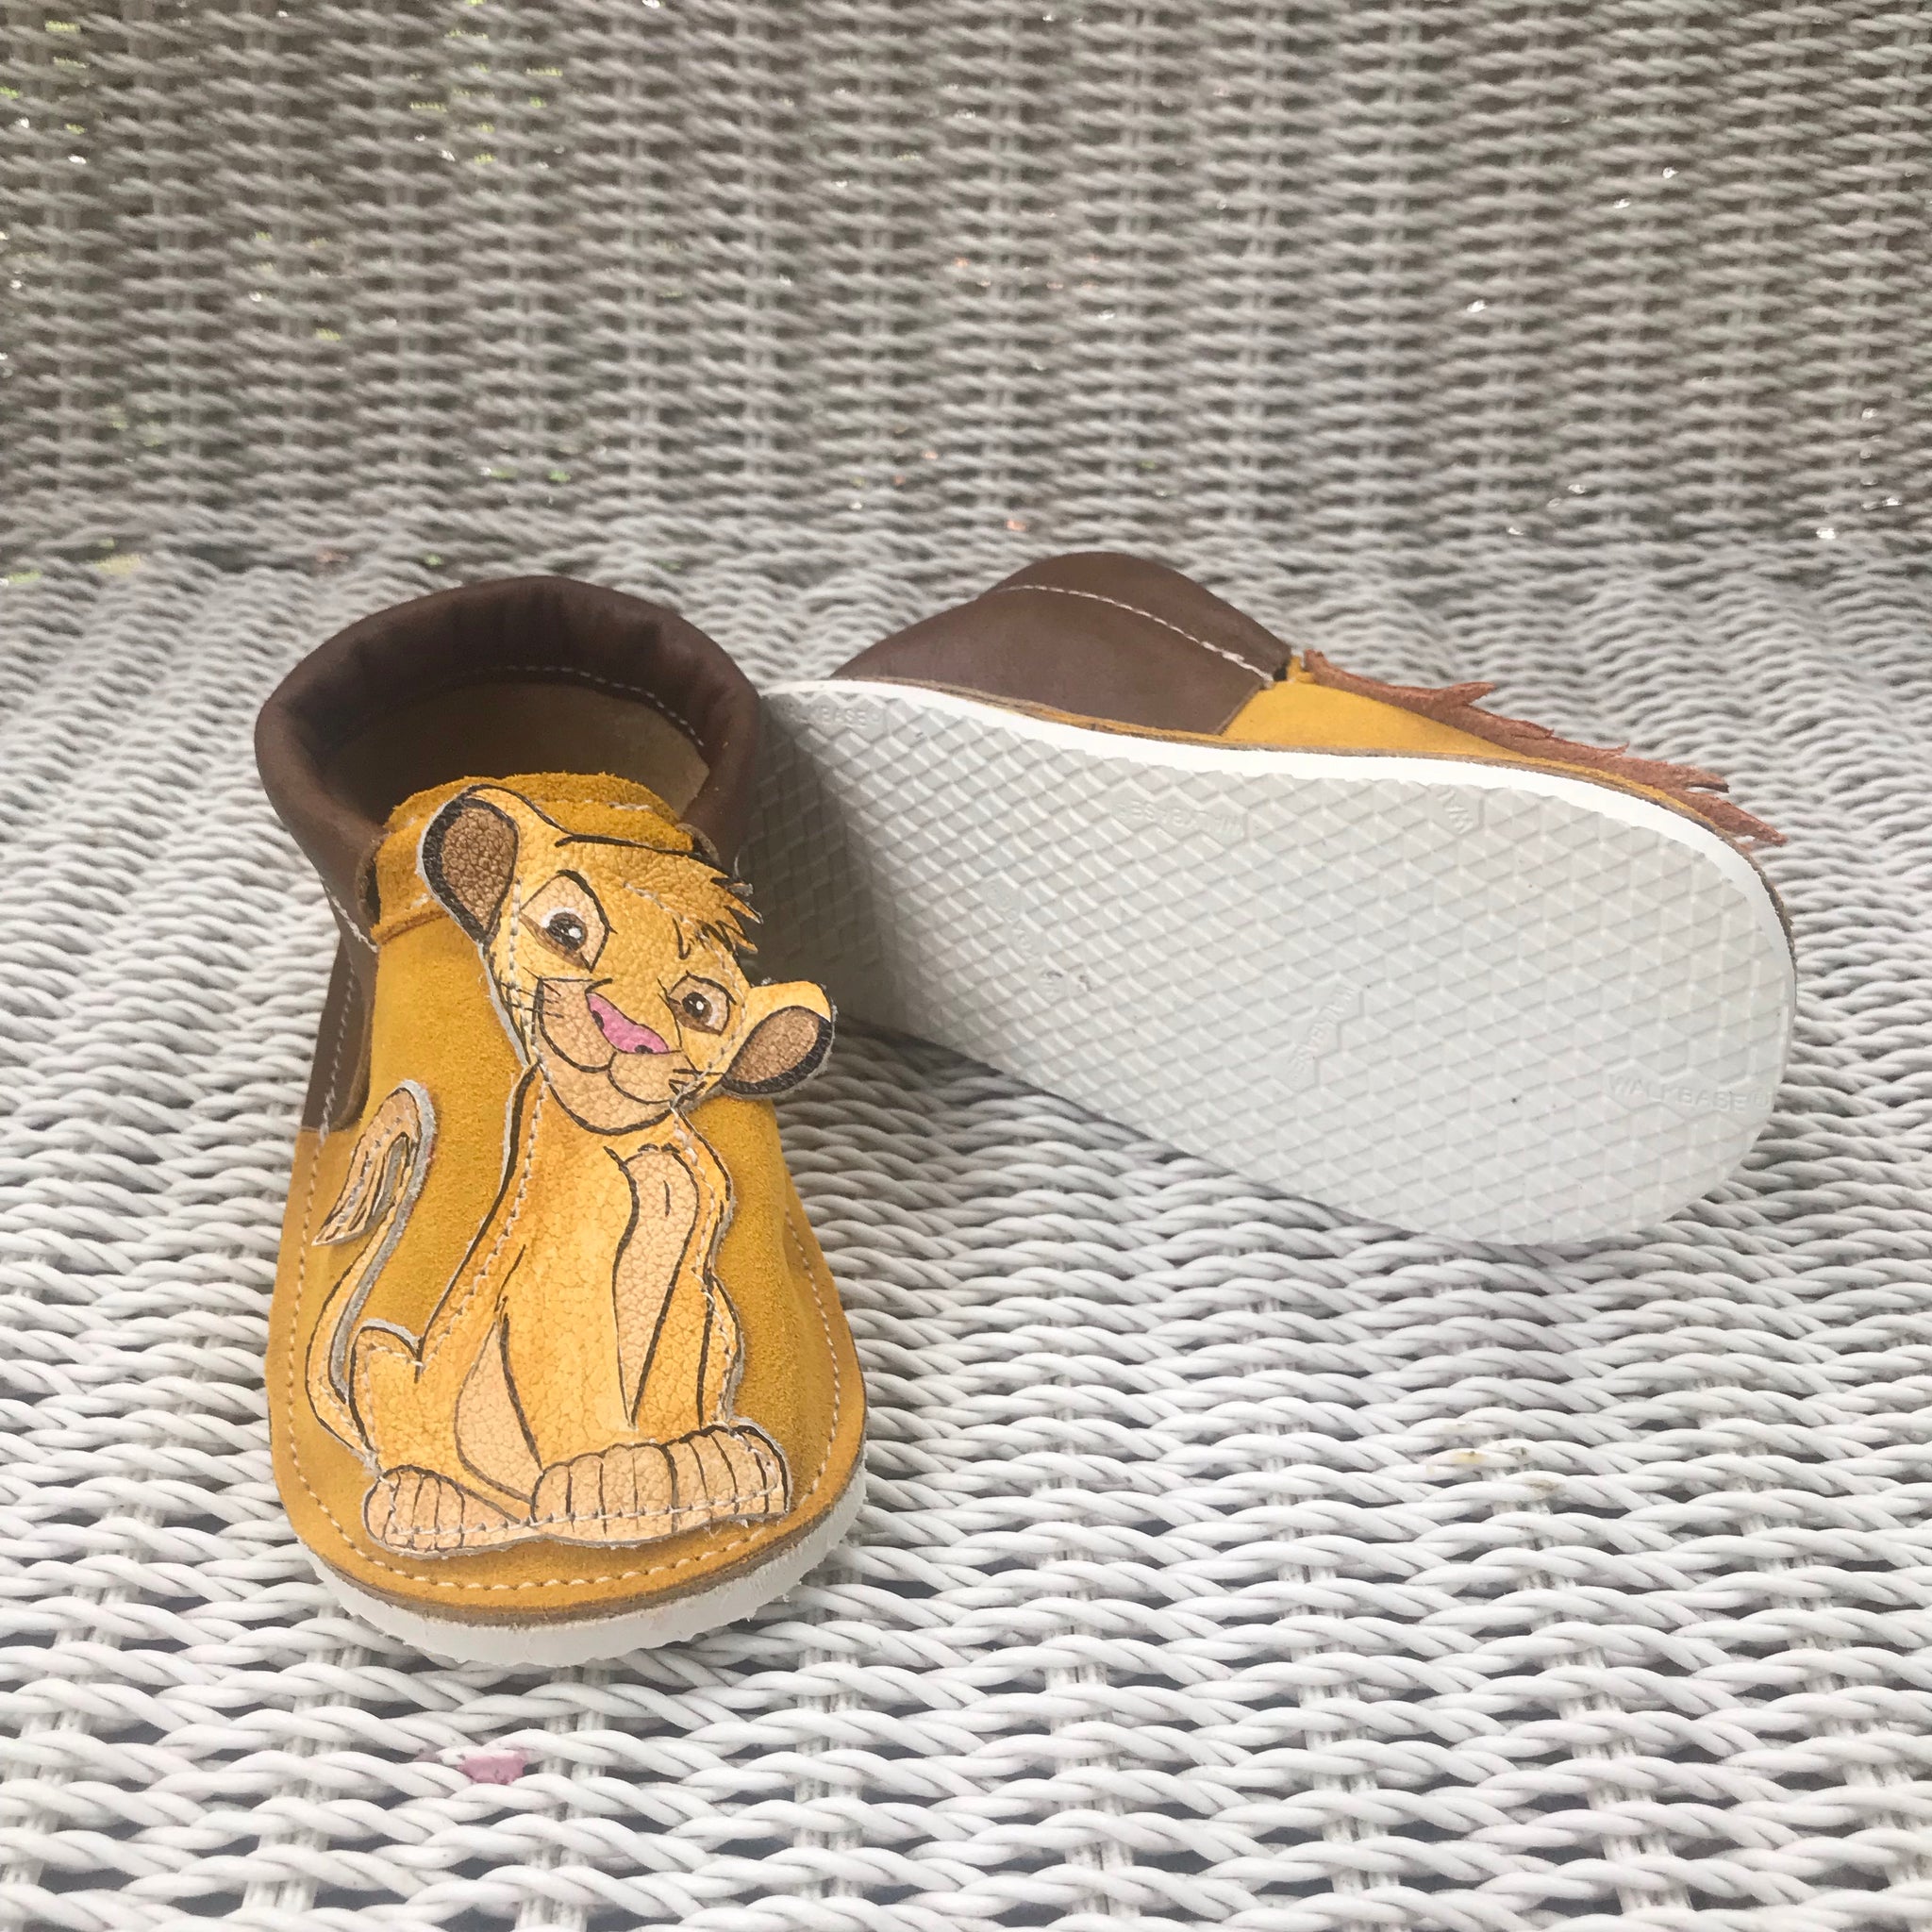 Lion kids shoes